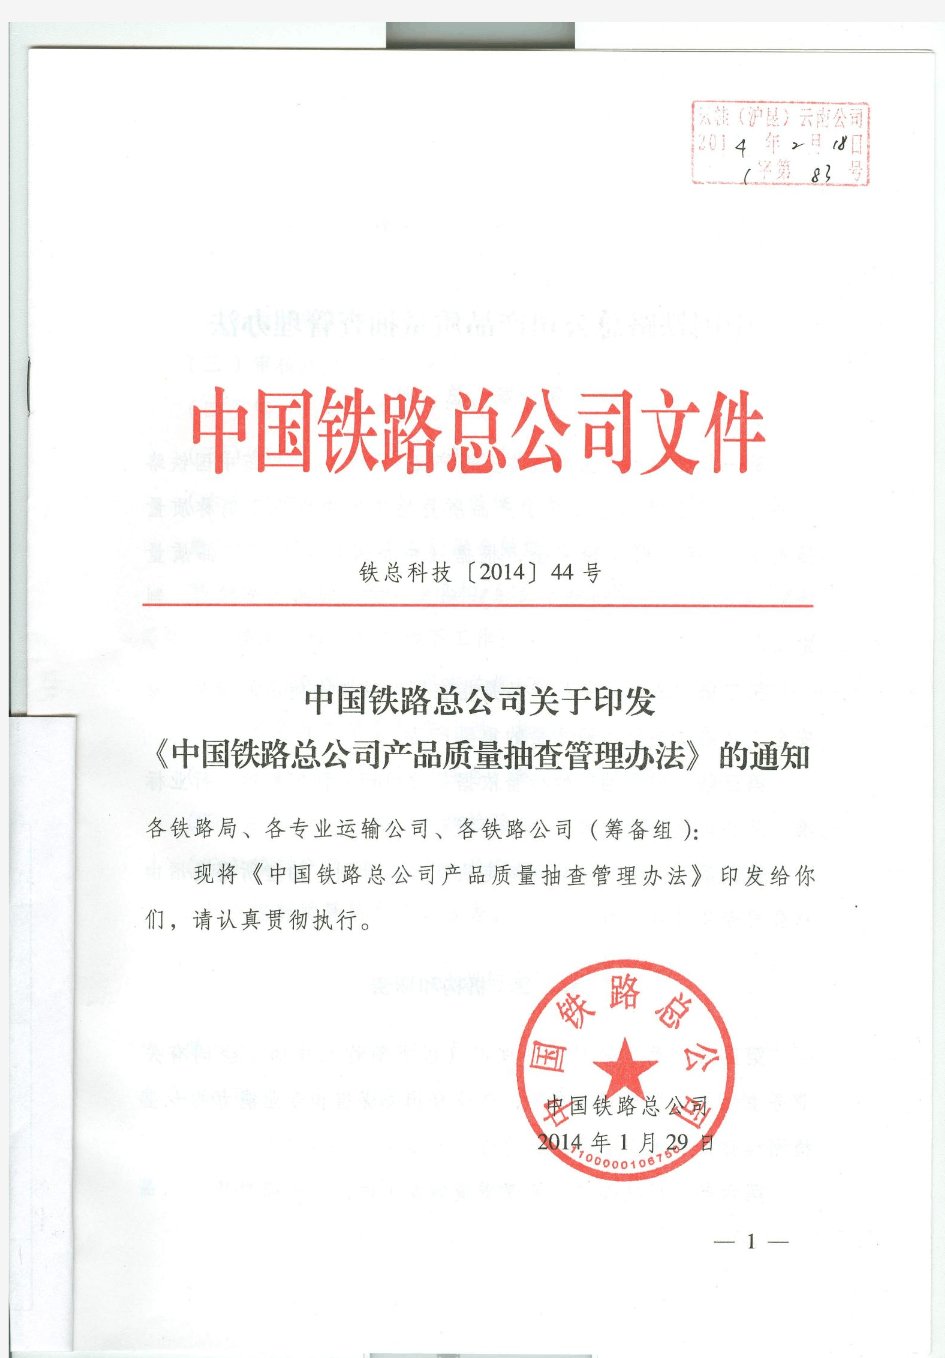 中国铁路总公司产品质量抽查管理办法-铁总科技【2014】44号